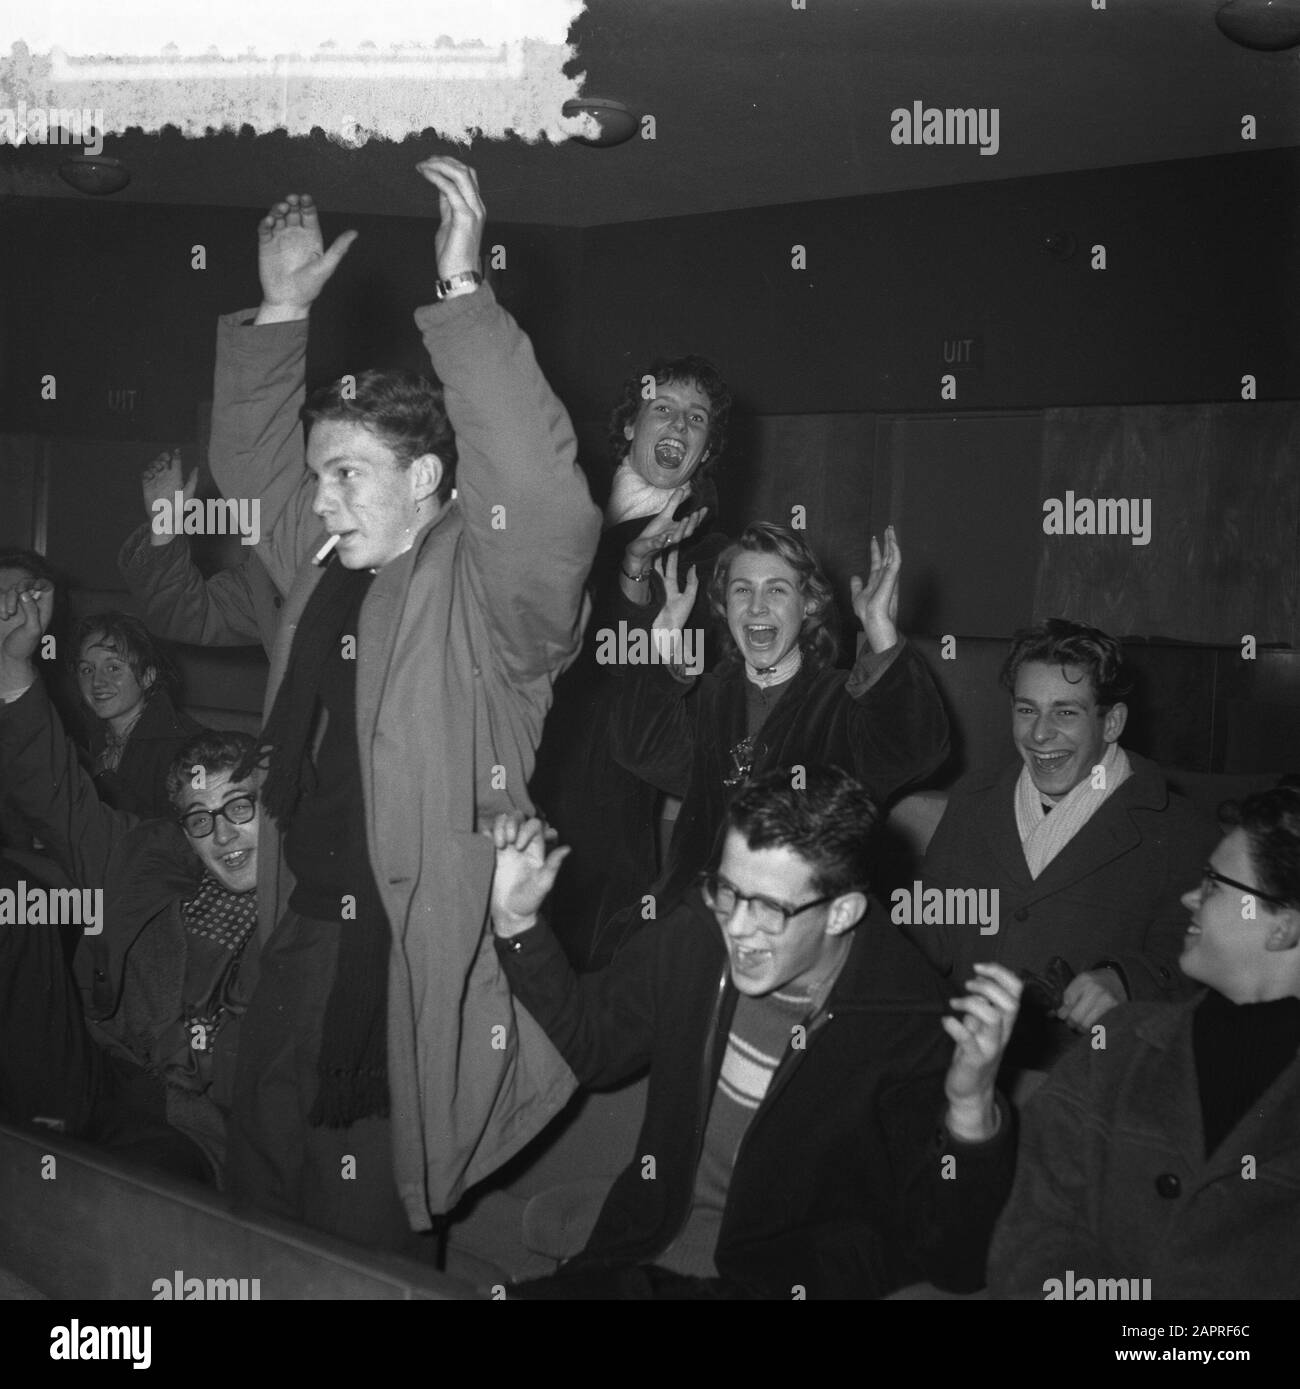 A Amsterdam, trois cinémas joueront des records du rock américain Elvis Presley dans l'après-midi de vendredi, comme publicité pour le film Love me tender que la semaine prochaine apparaîtra. Sur le premier moyen il y avait un grand nombre de jeunes enthousiastes qui, à cause de la musique passionnante, n'ont pas séjourné dans les sièges pendant longtemps et dansaient le Rock and Roll entre les rangées. Date : 7 décembre 1956 mots clés : cinémas, danses, jeunes, musique Banque D'Images